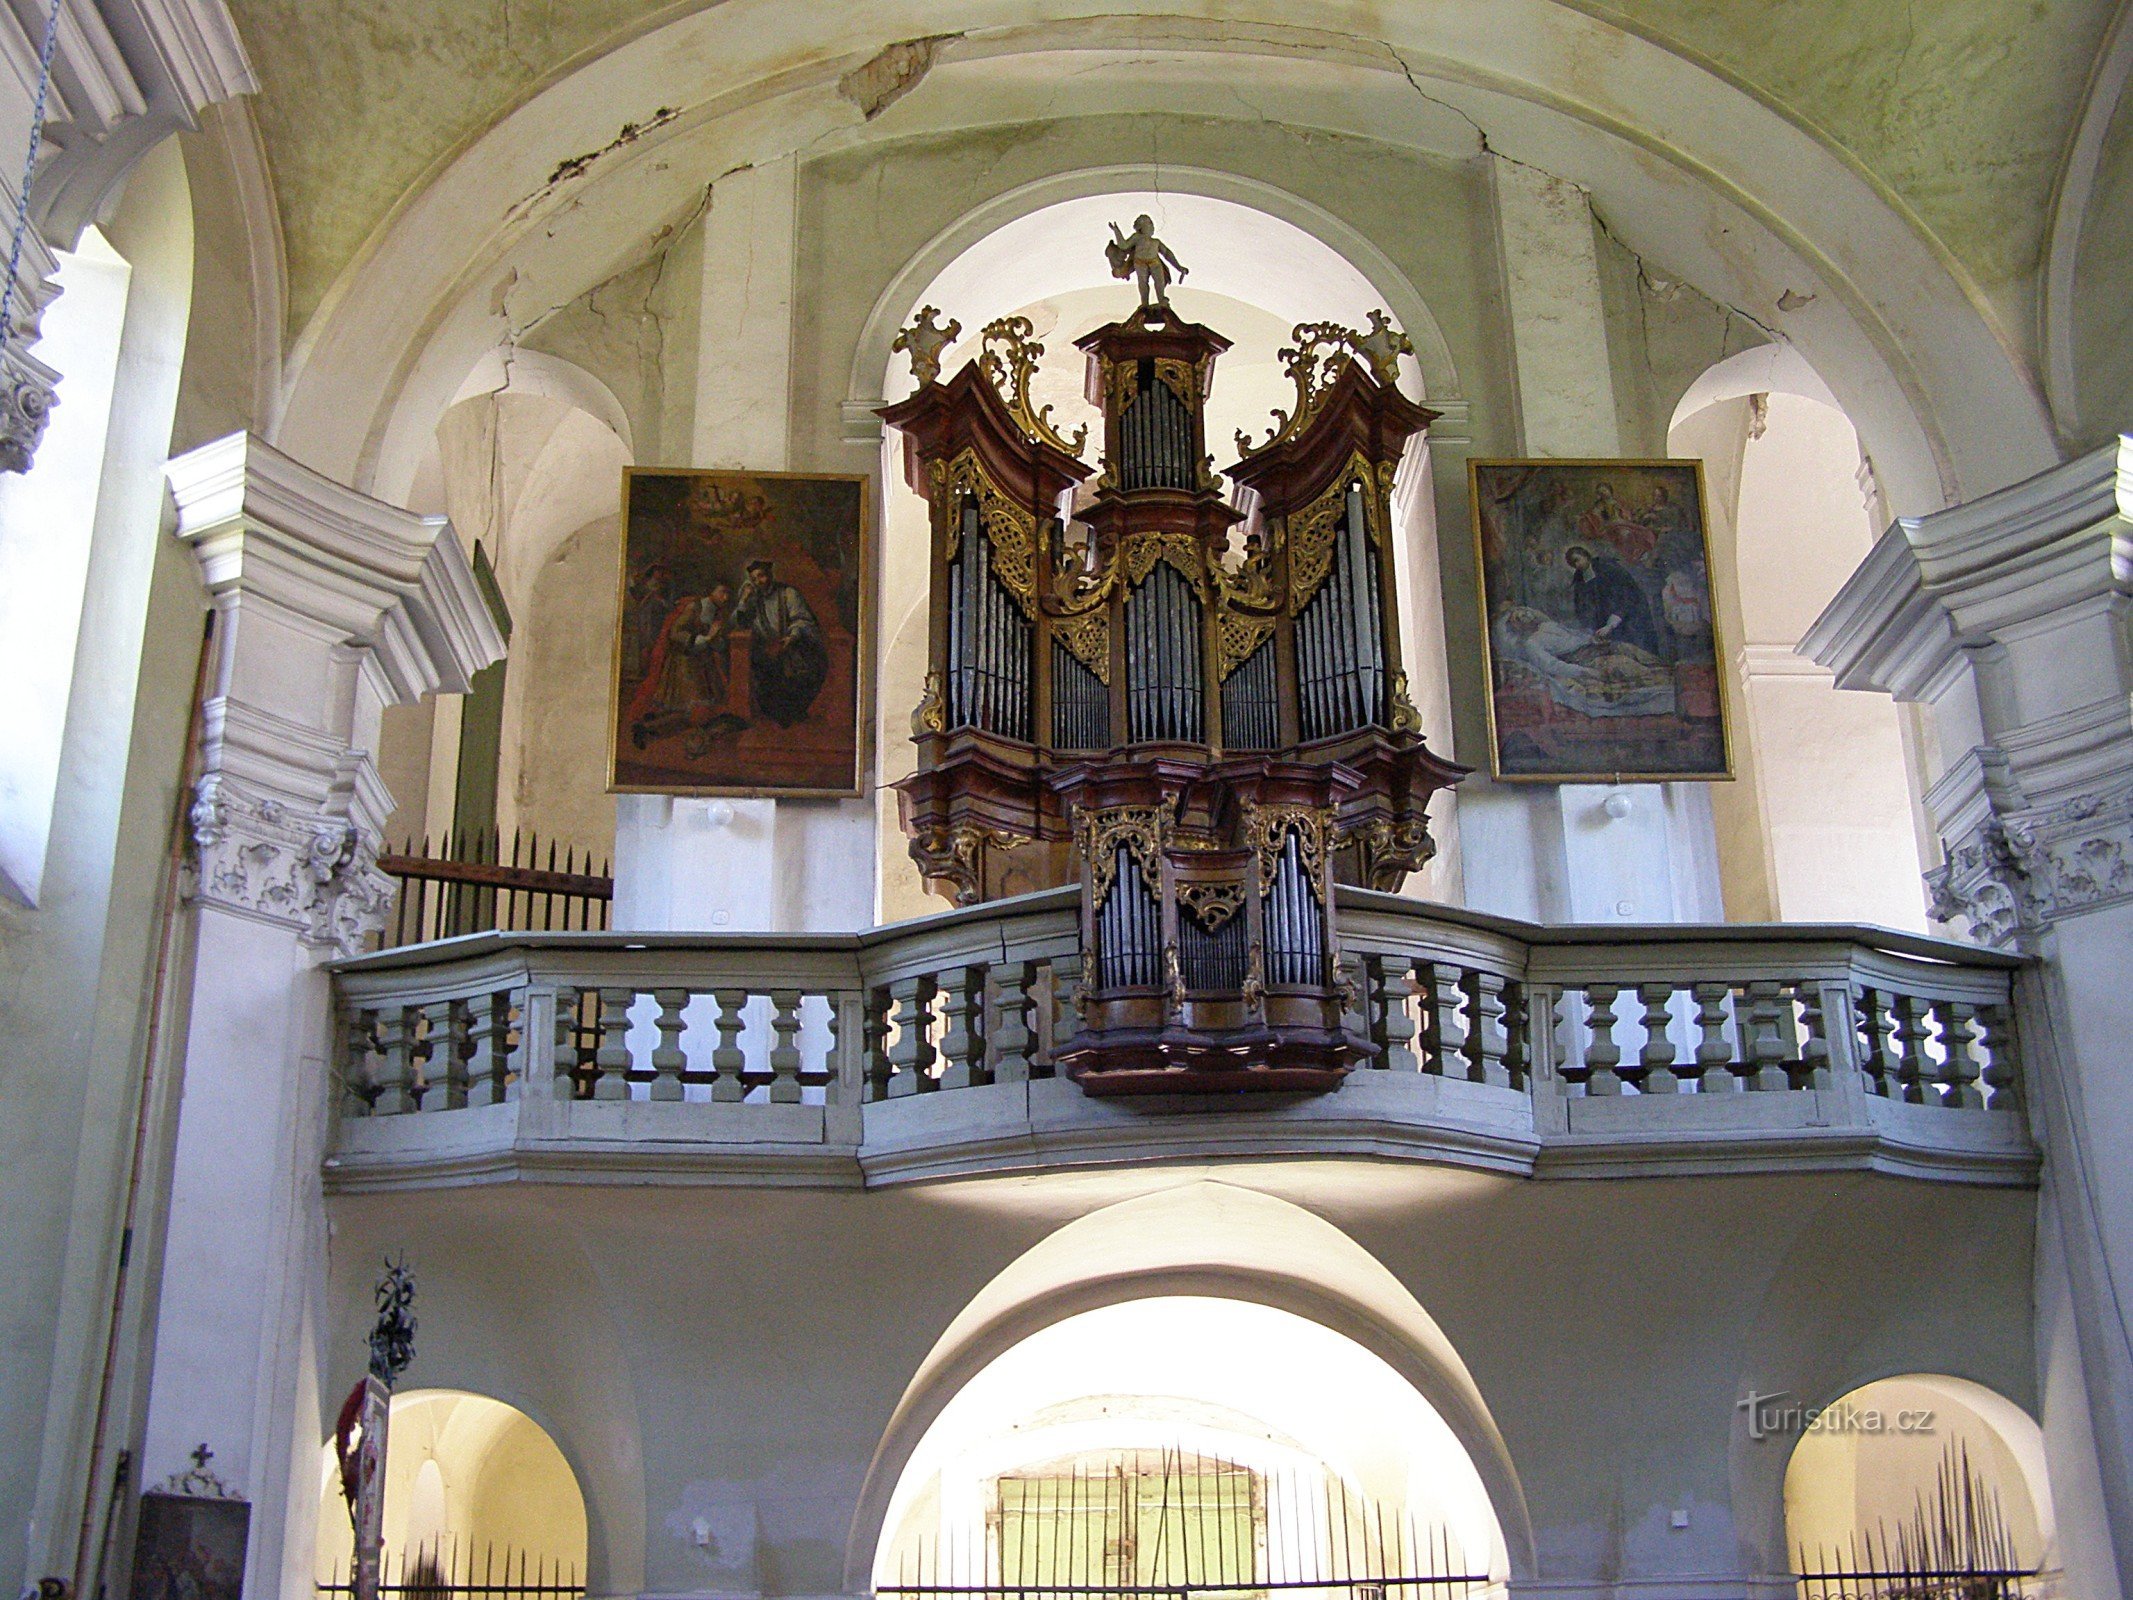 coro e órgão na igreja de St. Pedro e Paulo